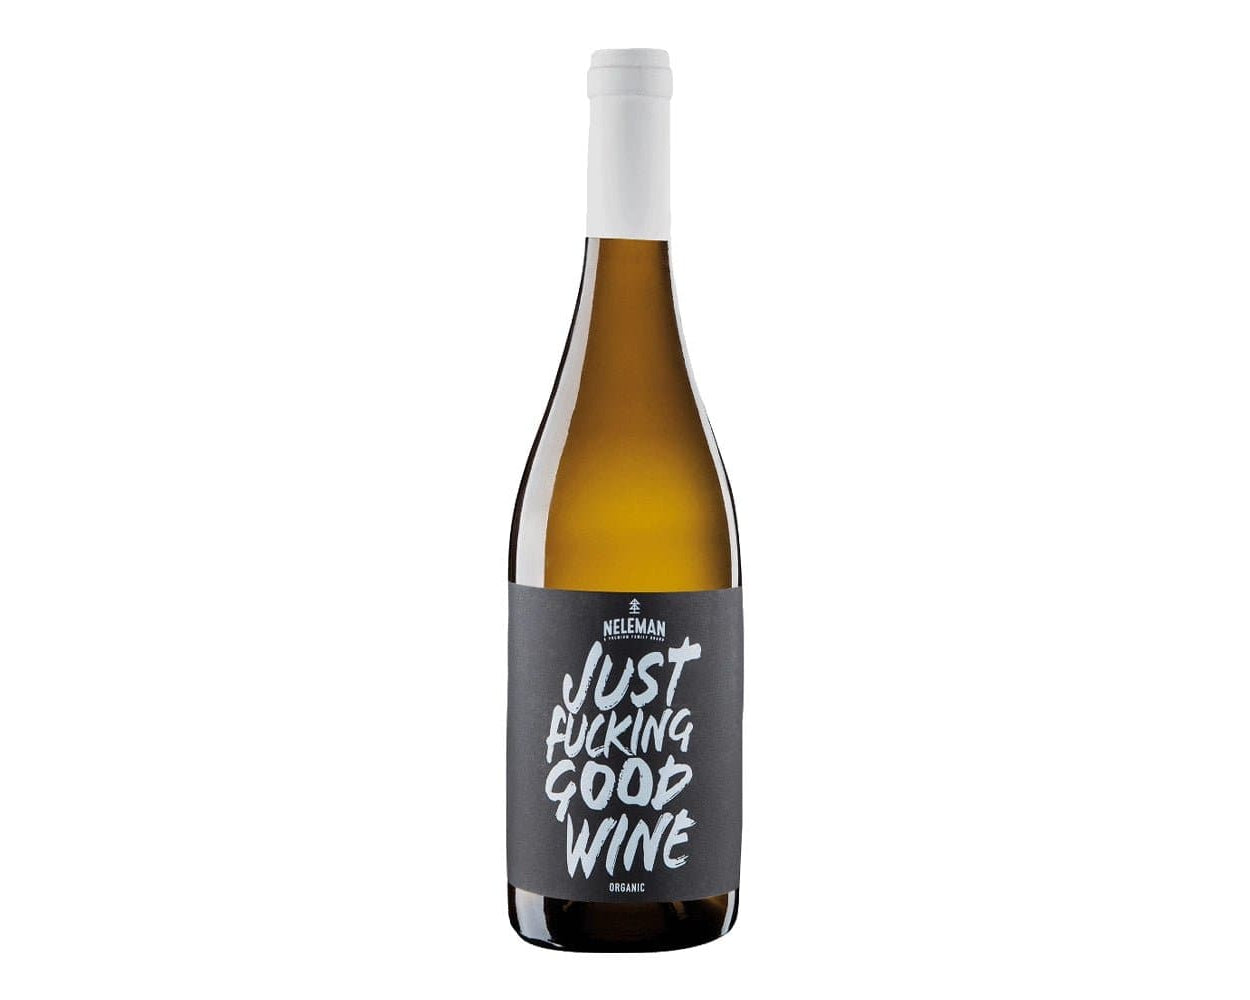 Just F**king Good White Wine - IMP & MAKER